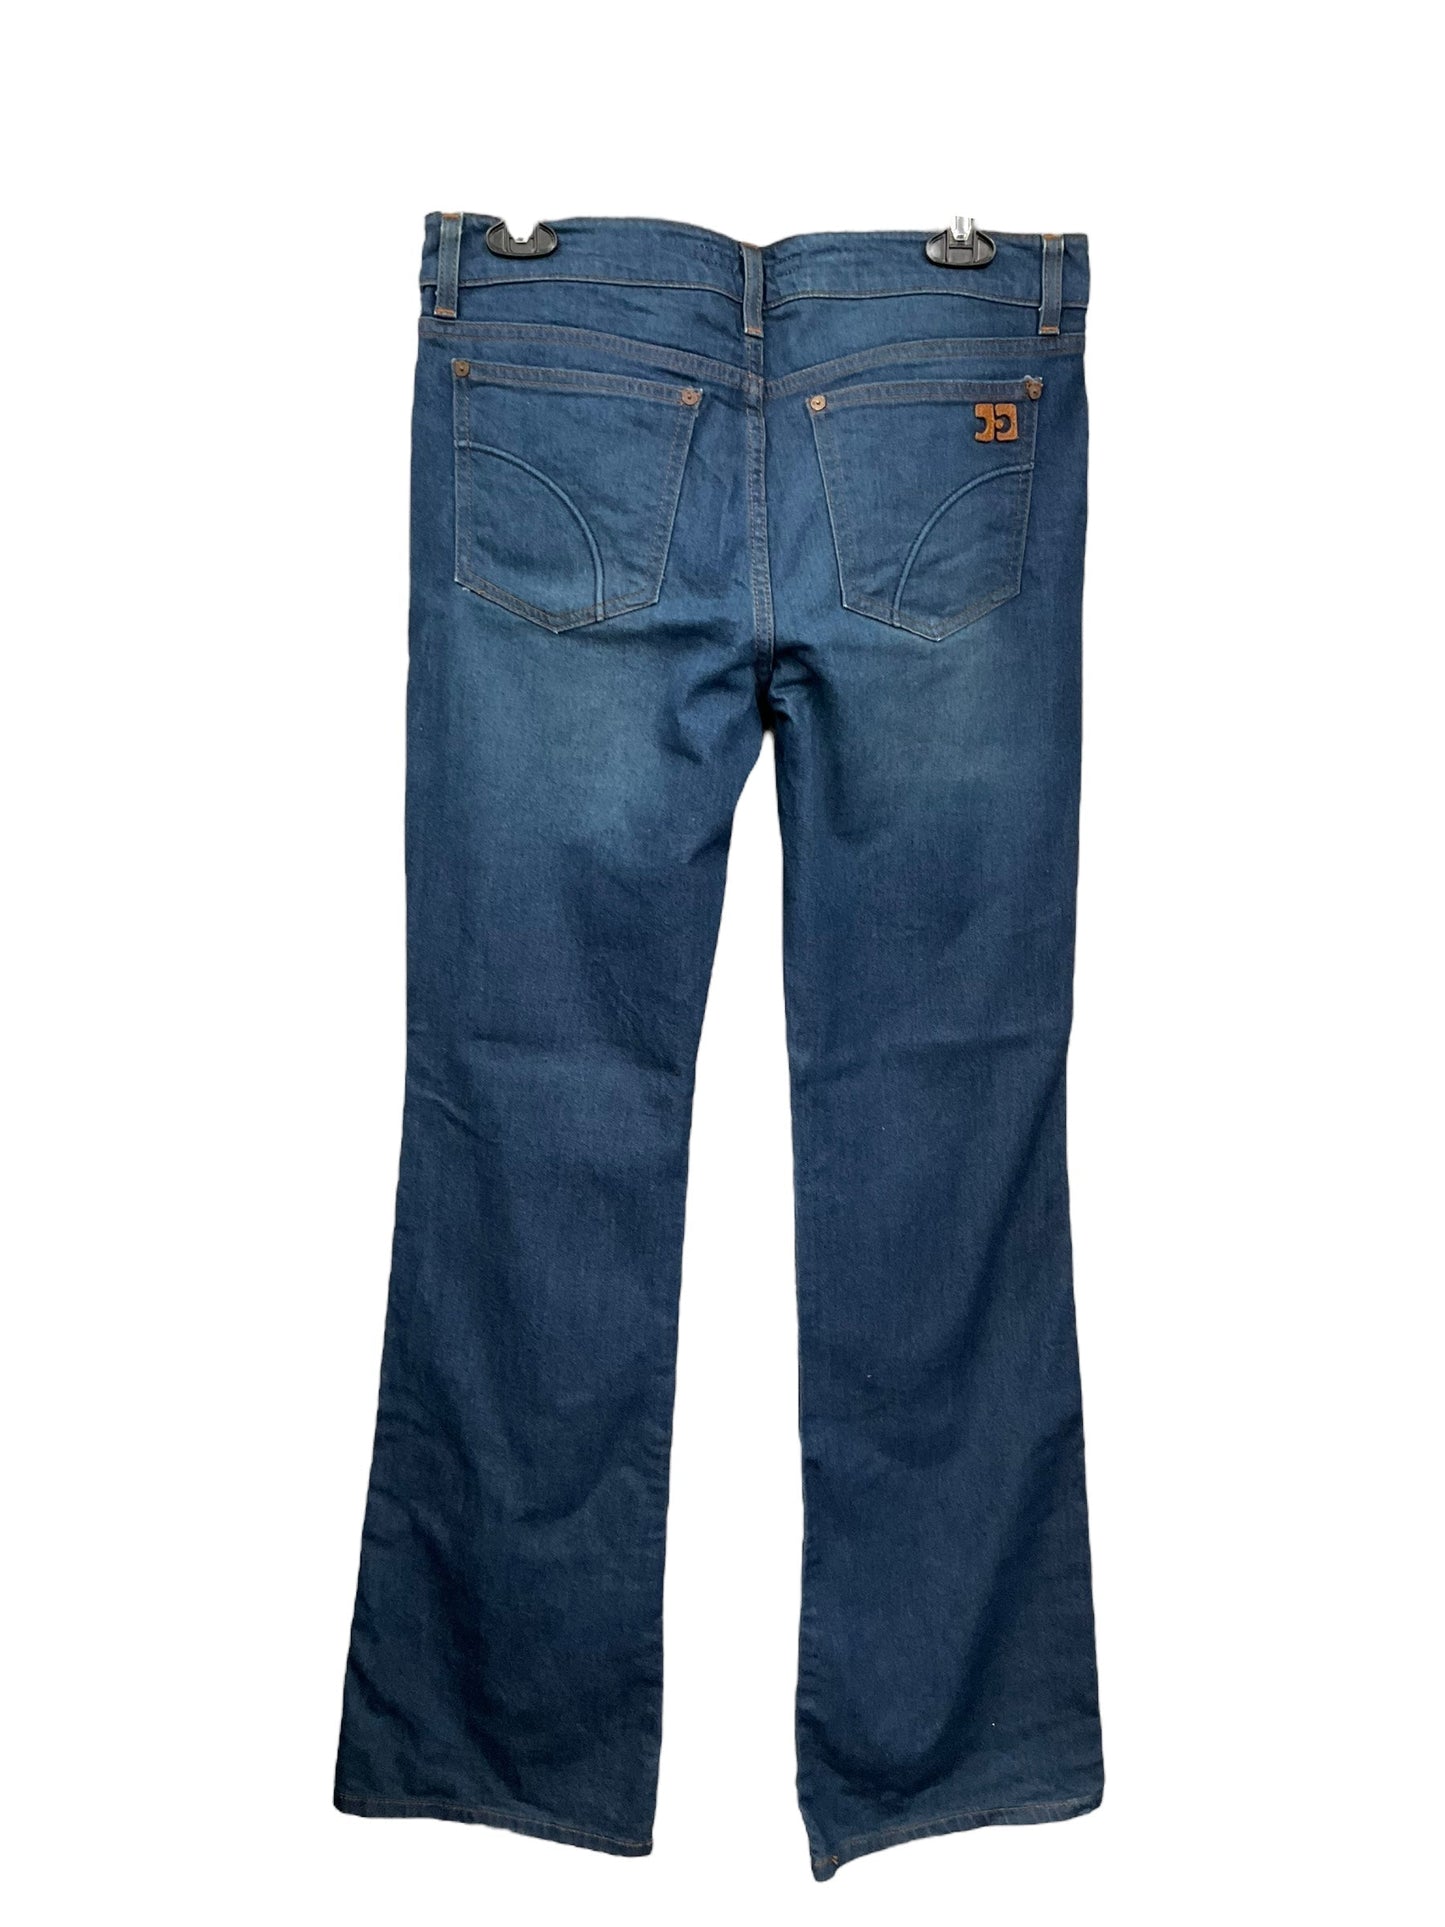 Blue Denim Jeans Boot Cut Joes Jeans, Size 10